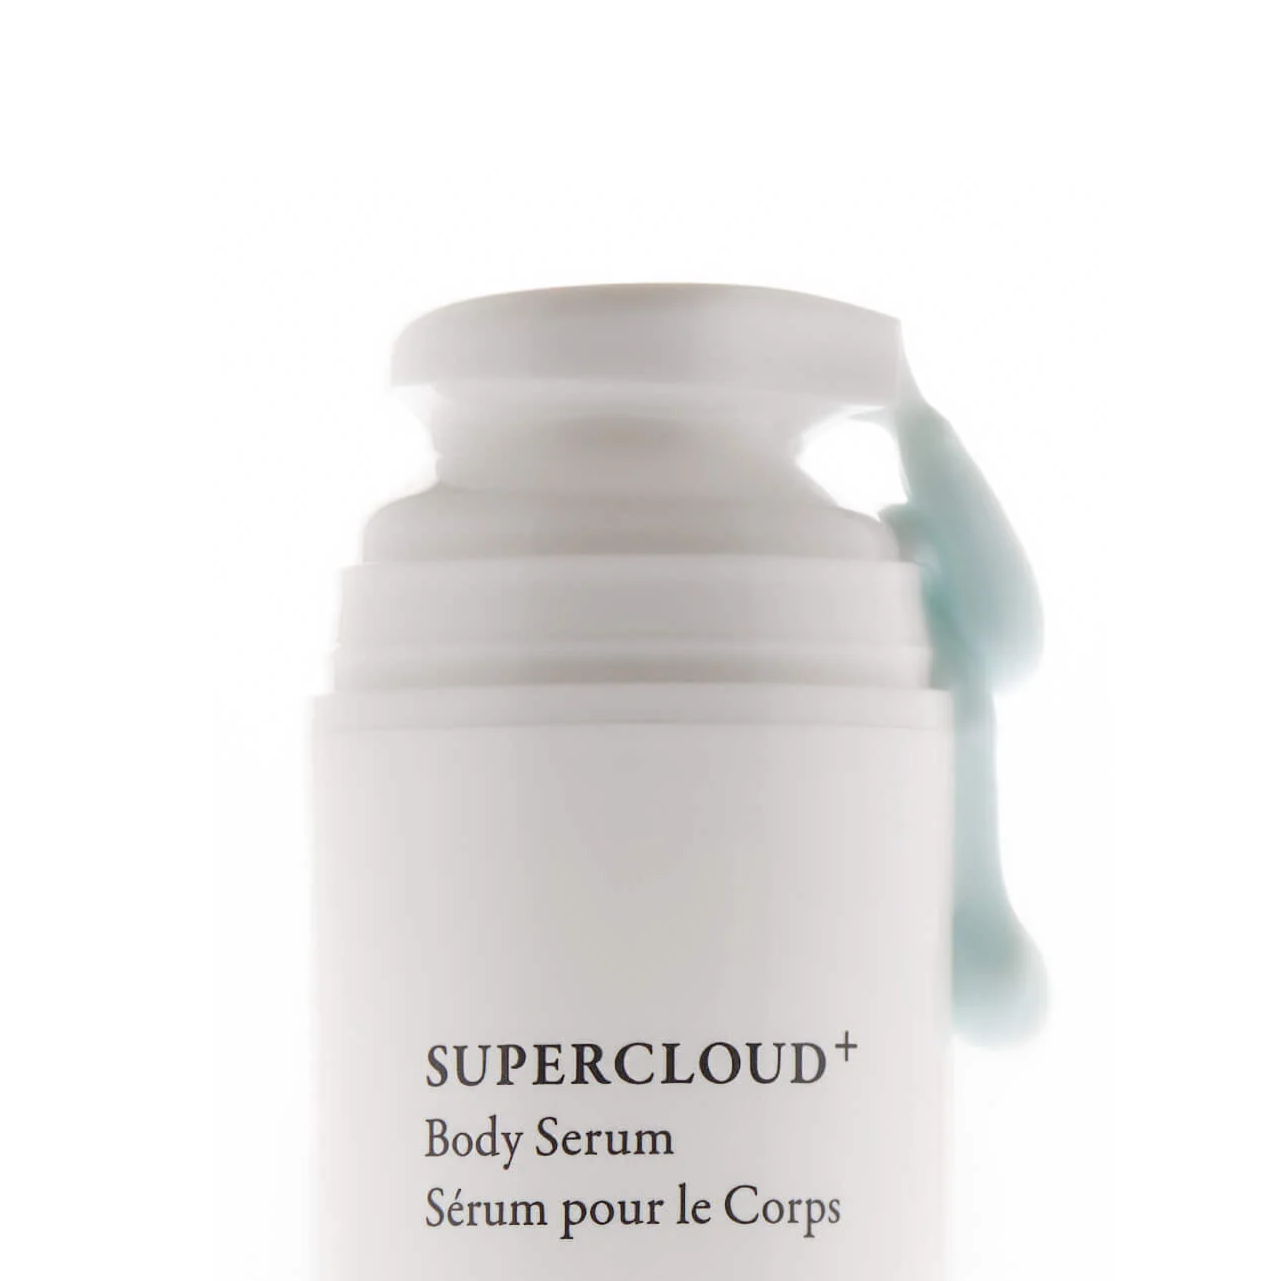 Supercloud Body Serum+